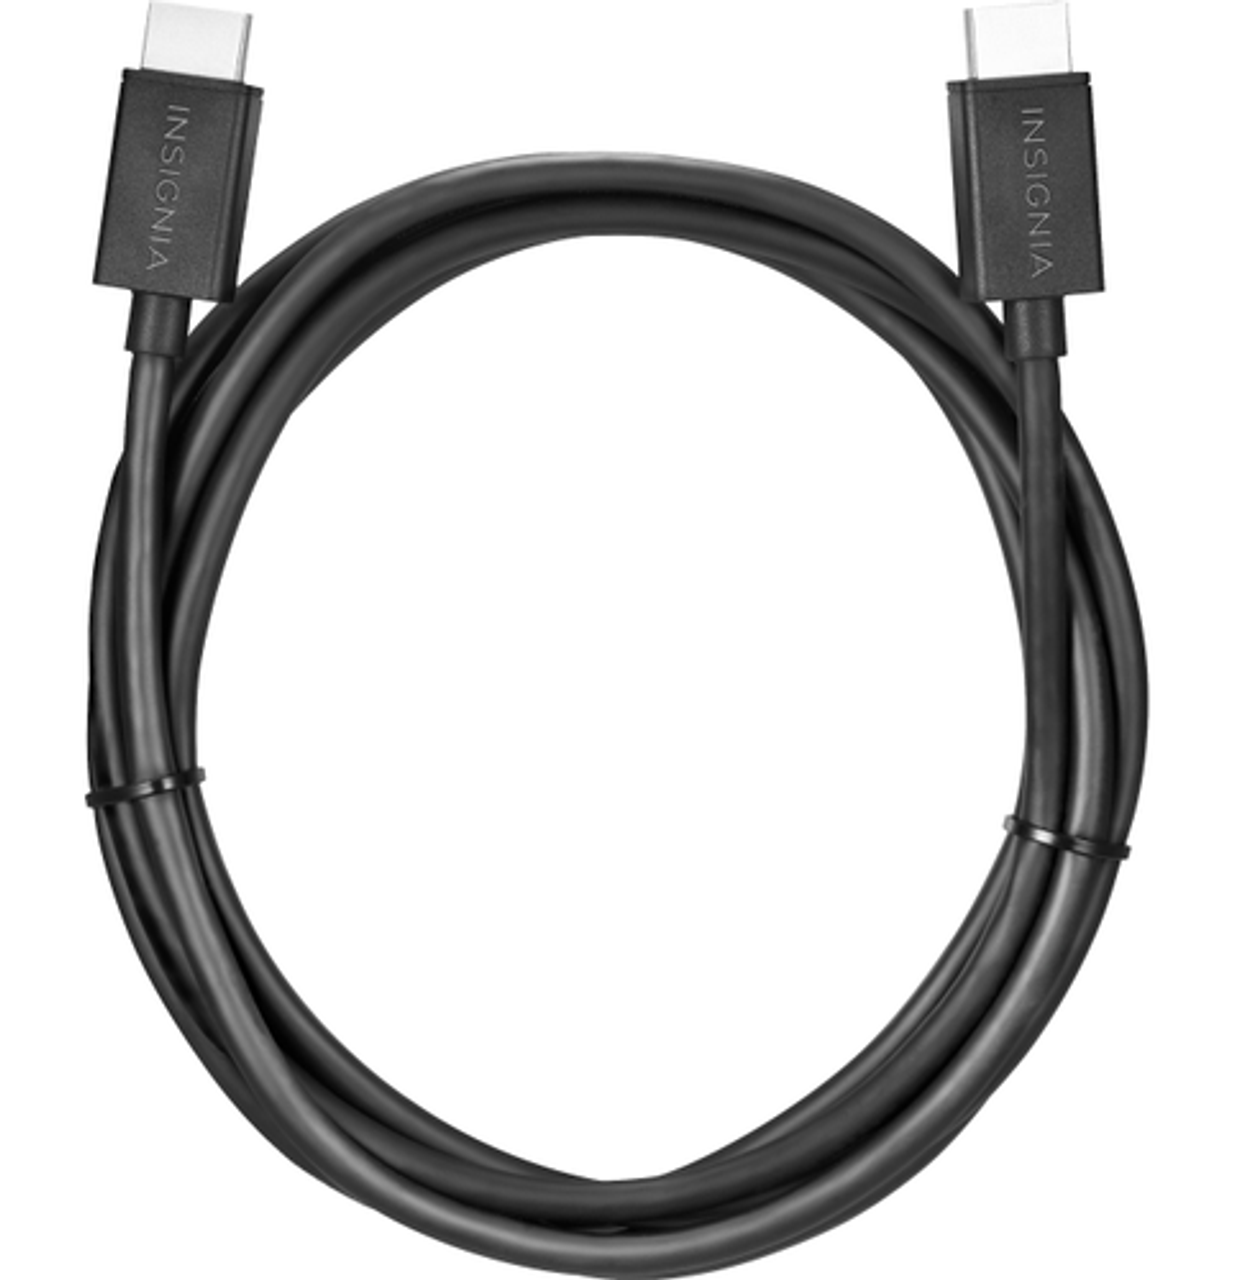 Insignia™ - 8' 4K Ultra HD HDMI Cable - Black